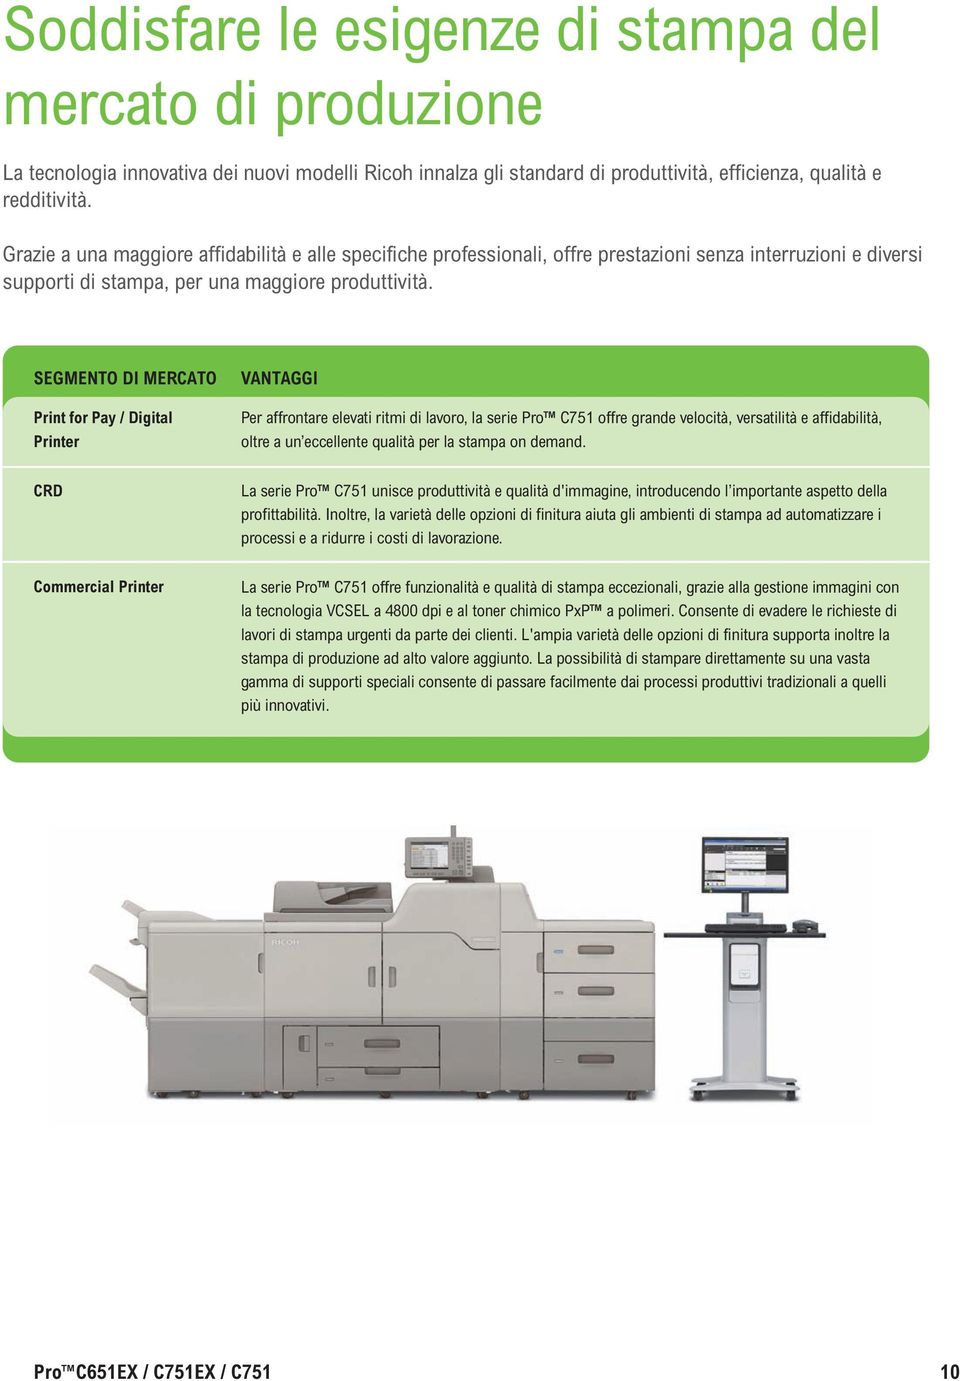 SEGMENTO DI MERCATO Print for Pay / Digital Printer VANTAGGI Per affrontare elevati ritmi di lavoro, la serie Pro C751 offre grande velocità, versatilità e affidabilità, oltre a un eccellente qualità